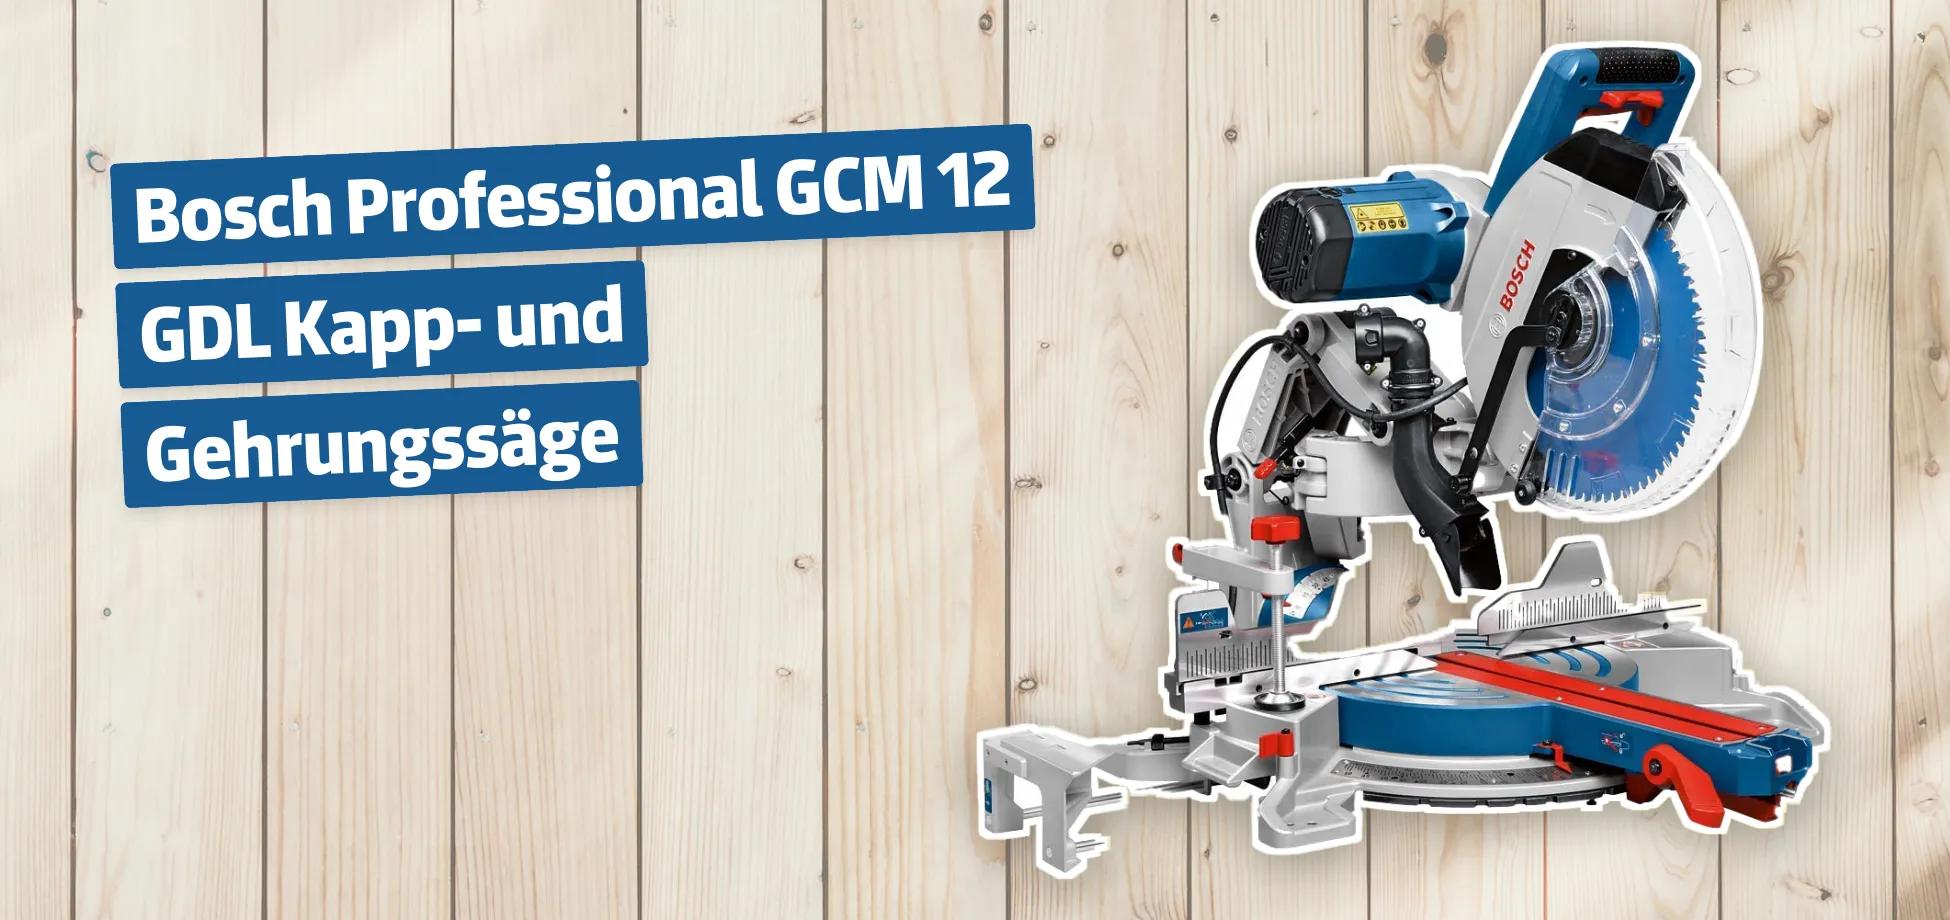 Bosch Professional GCM 12 GDL Kapp- und Gehrungssäge